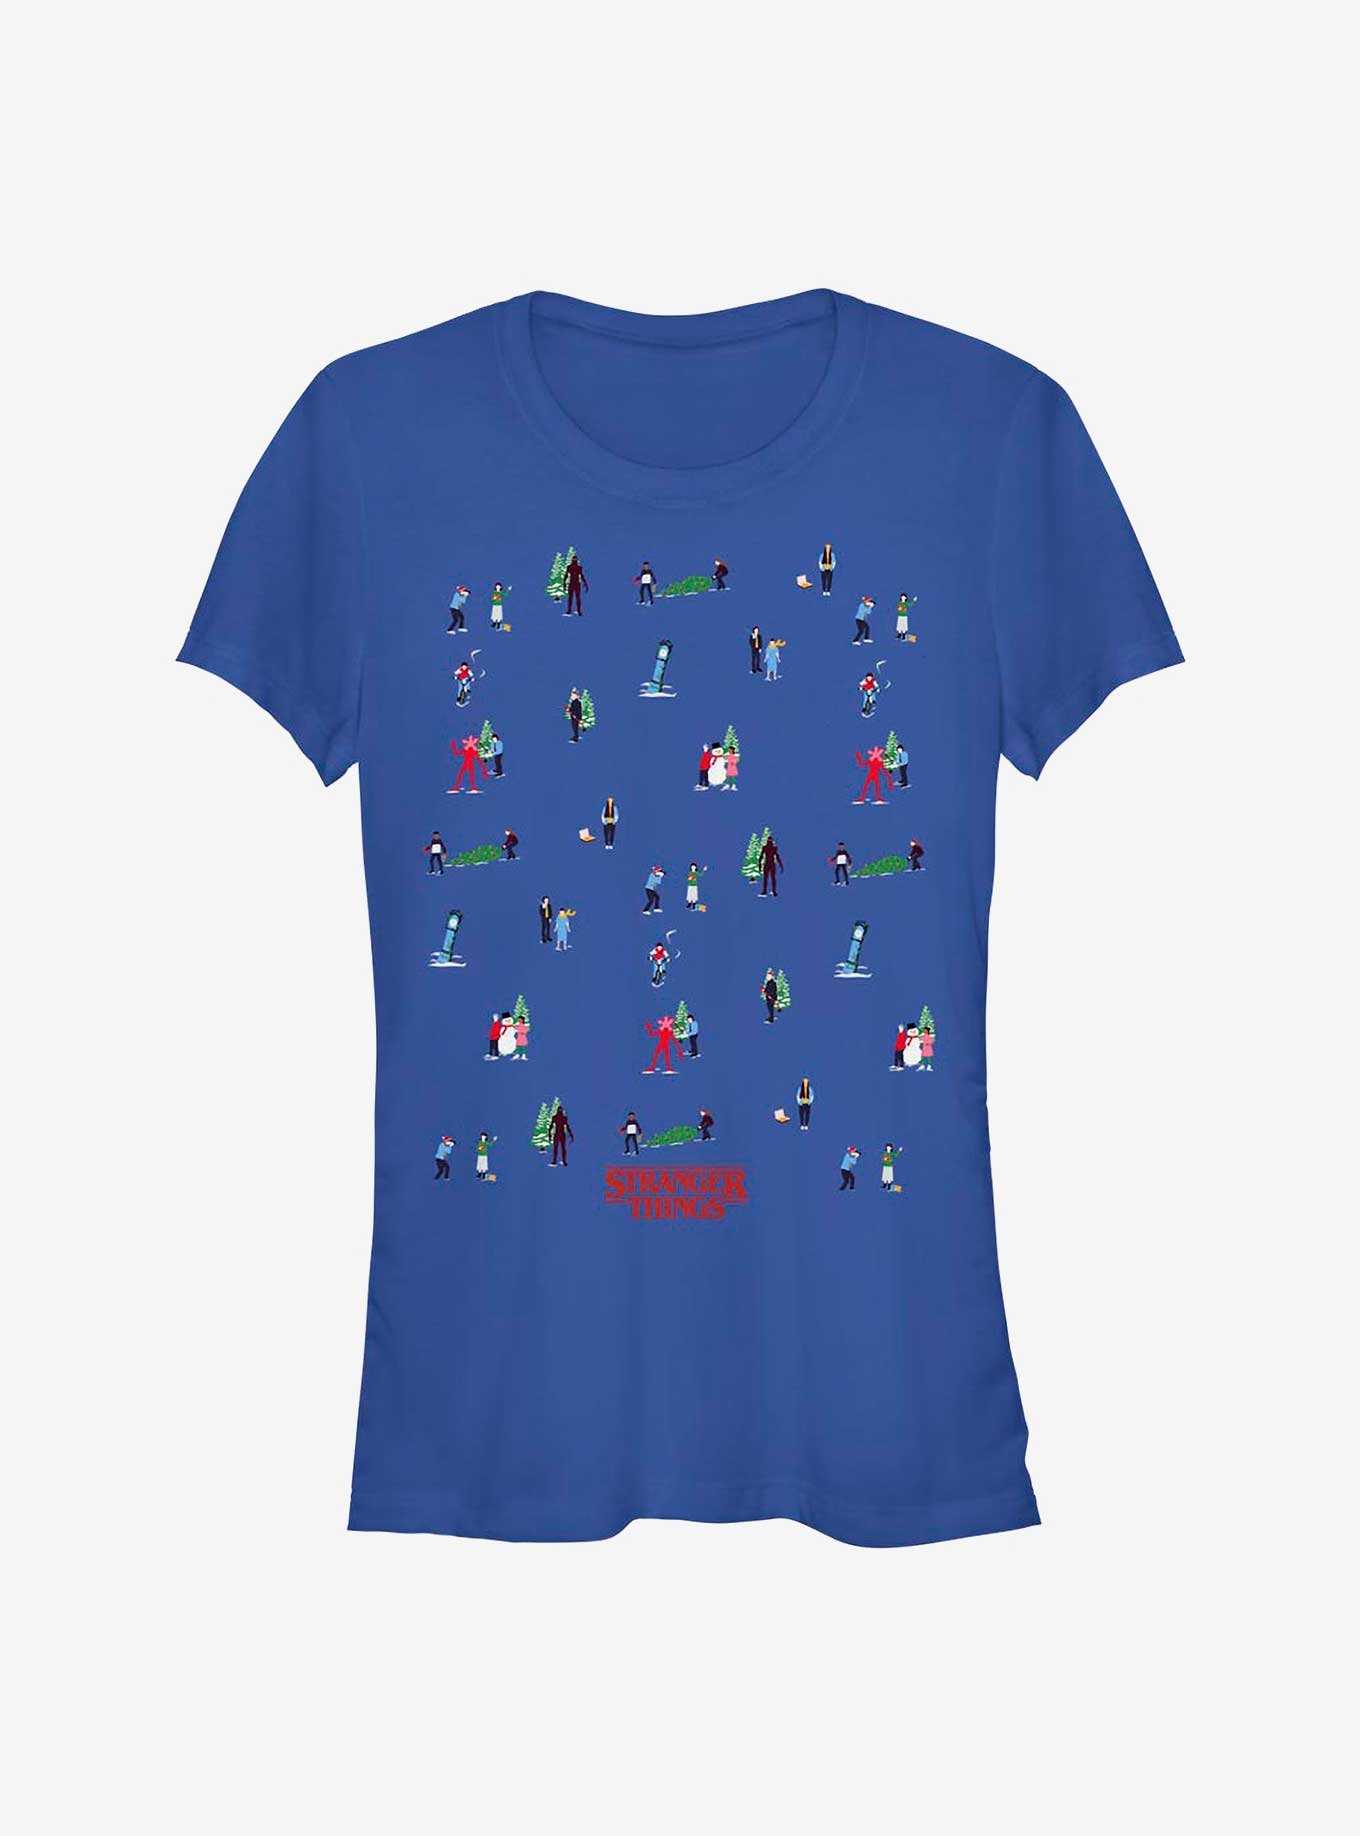 Stranger Things Get A Tree Girls T-Shirt, , hi-res